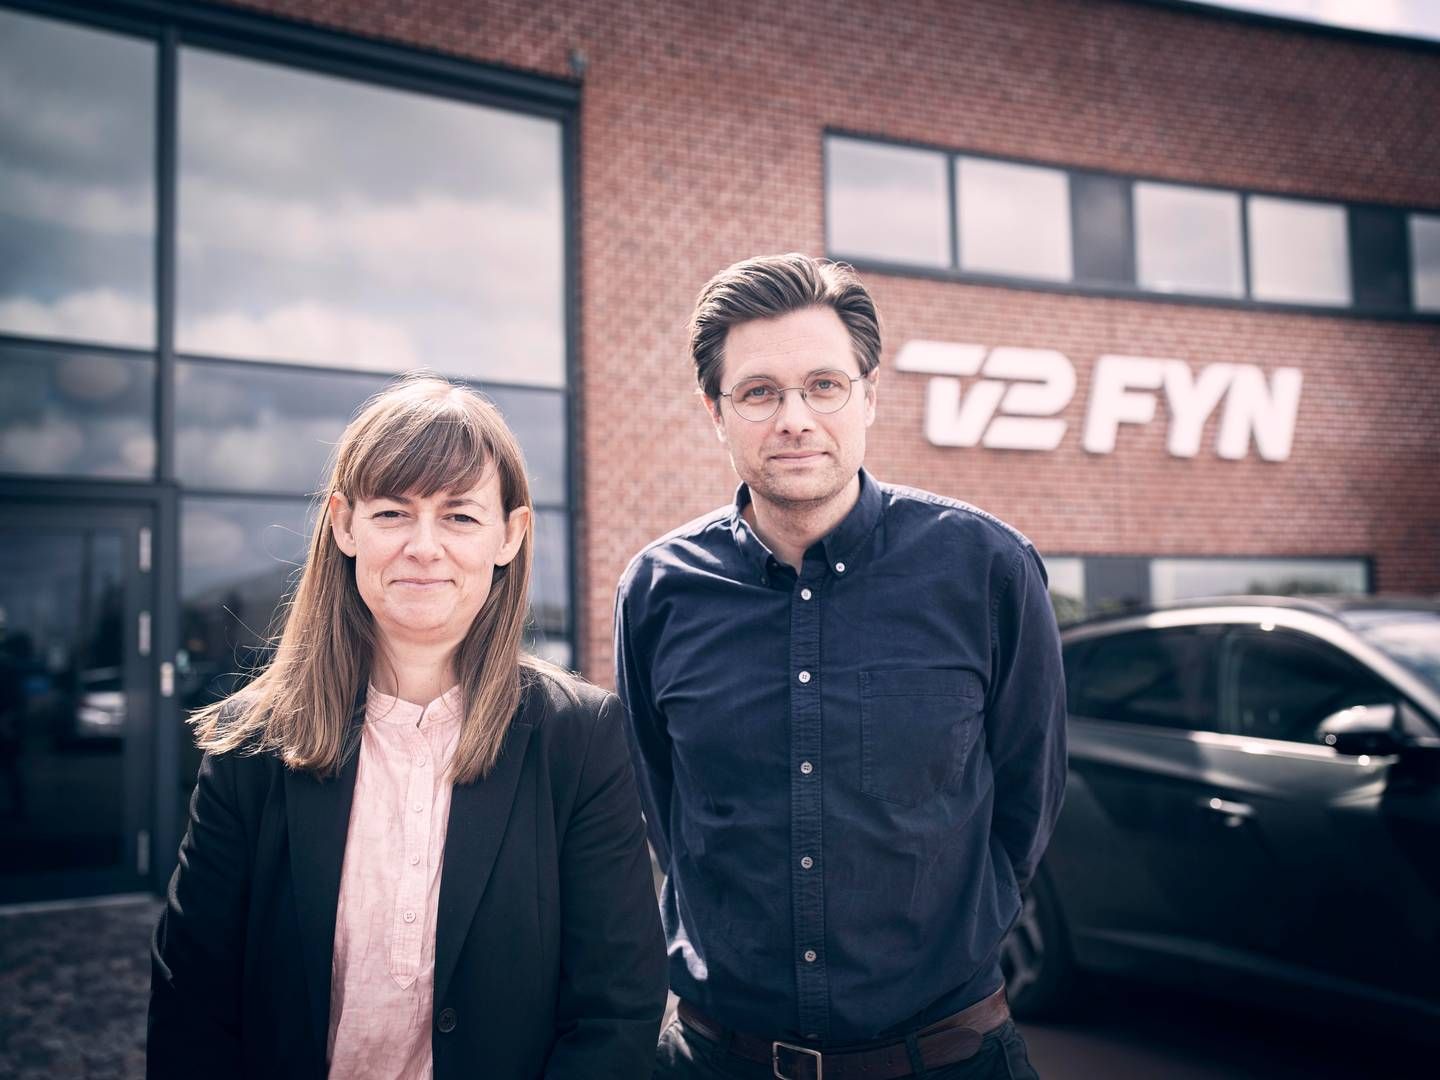 Lasse Hørbye er fyret som chefredaktør for TV 2 Fyn med øjeblikkelig virkning.